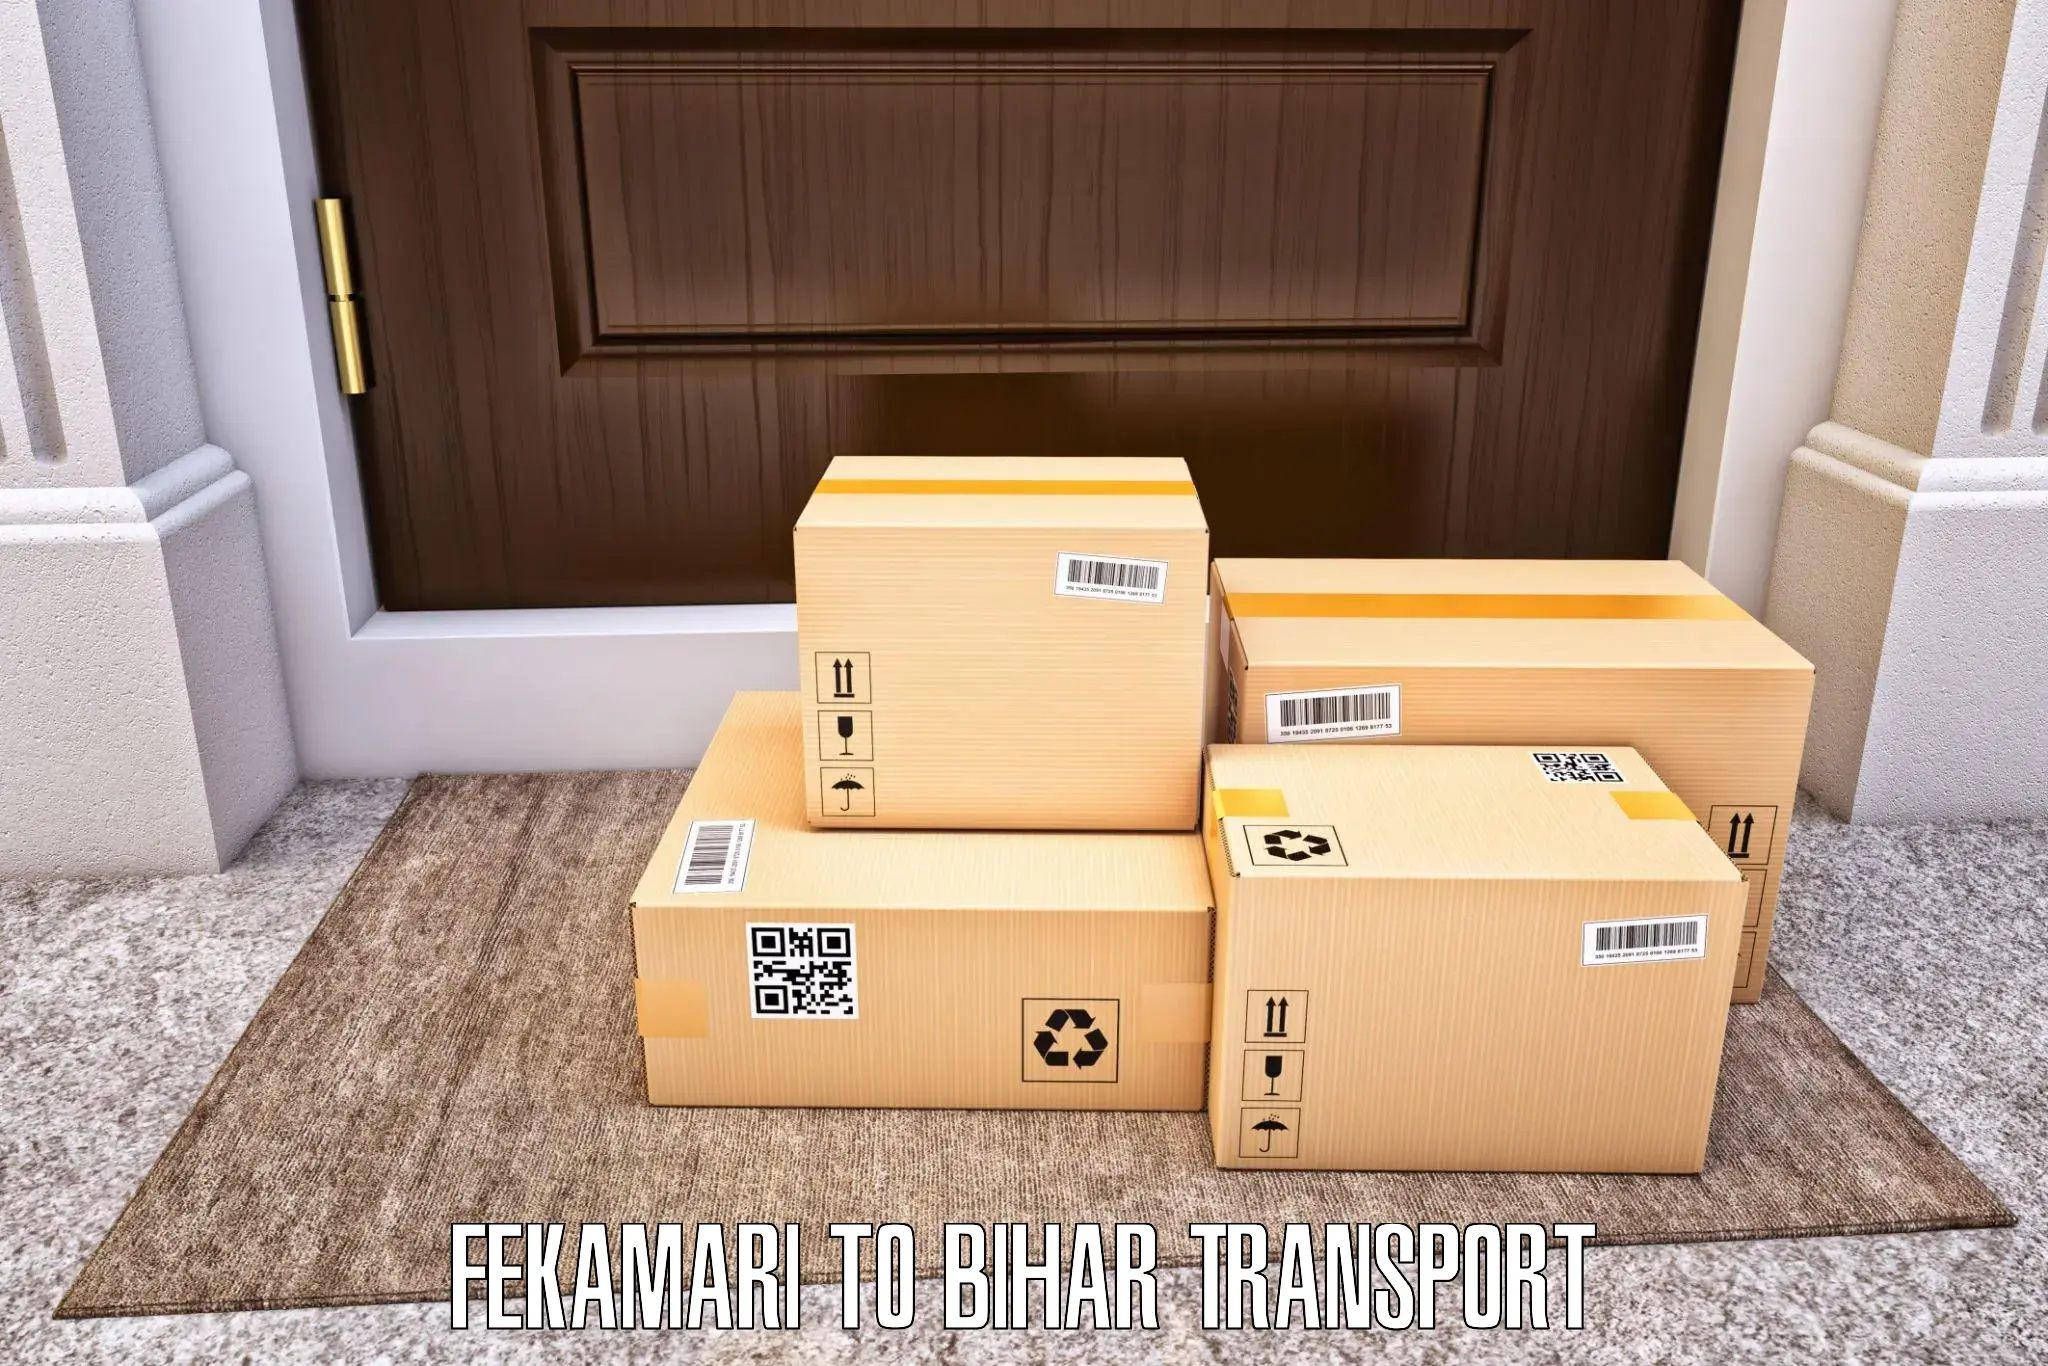 Vehicle transport services Fekamari to Hajipur